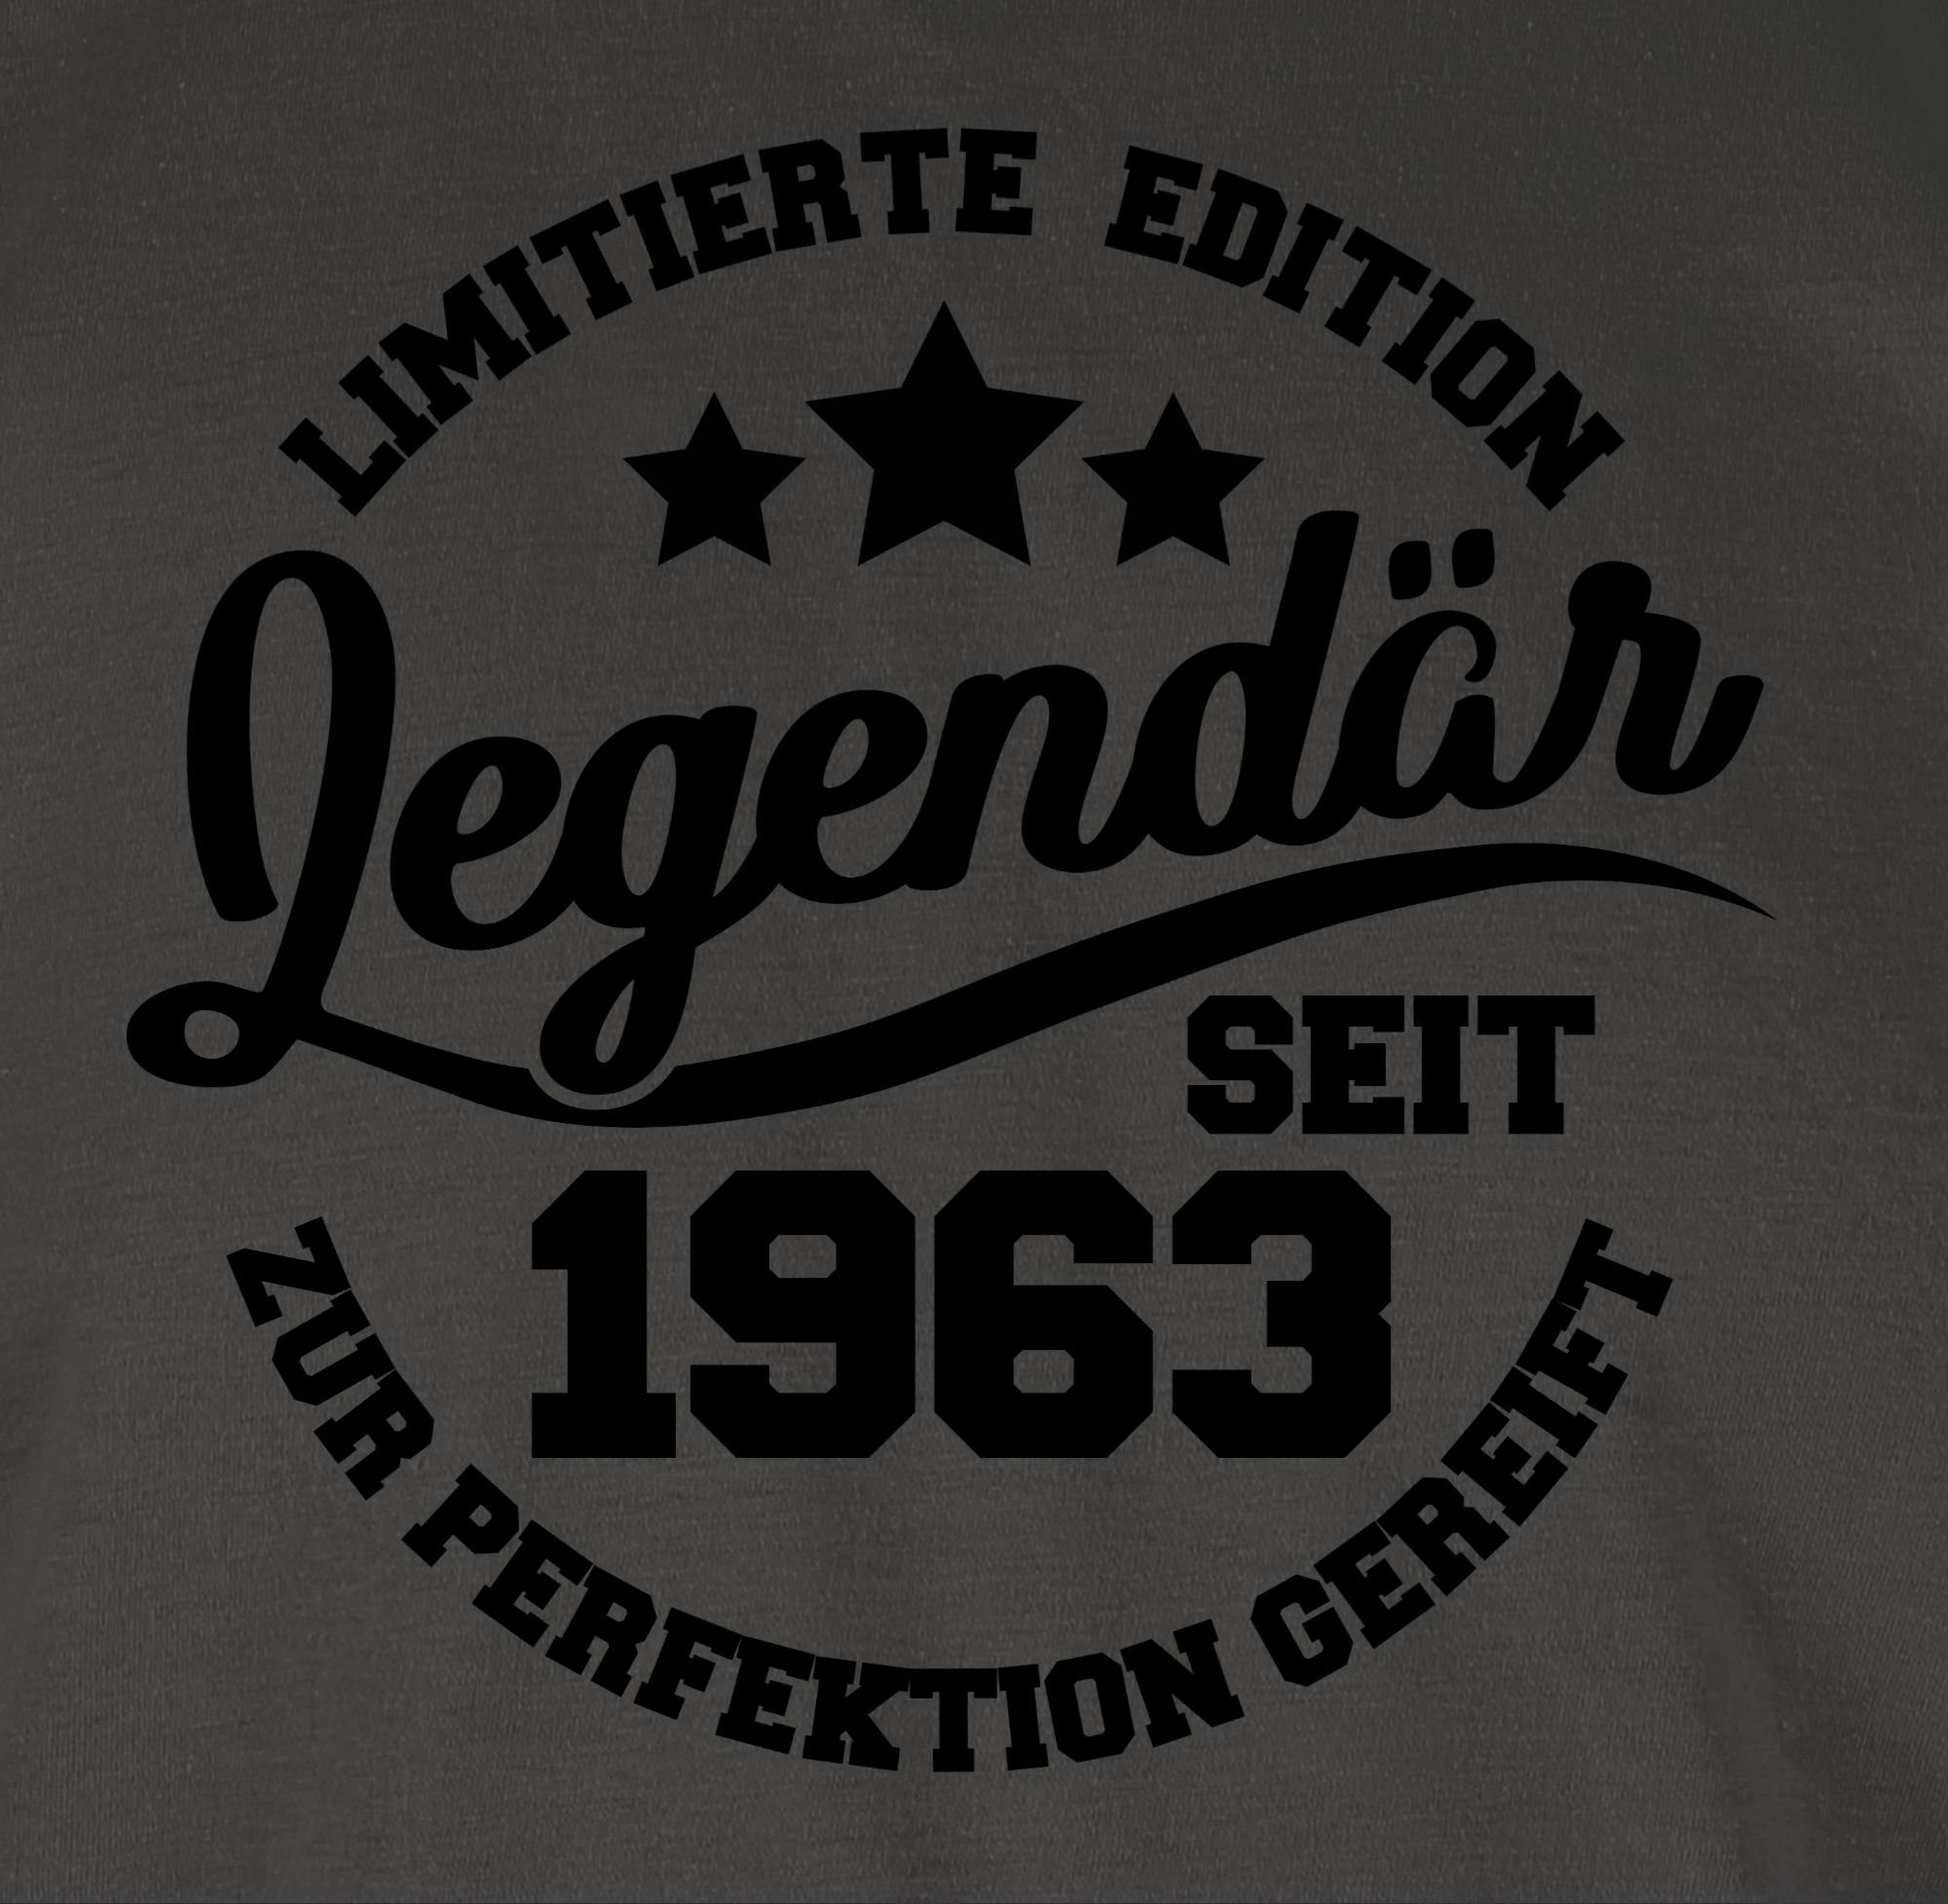 Shirtracer T-Shirt Legendär 1963 Geburtstag Dunkelgrau seit schwarz - 1 60